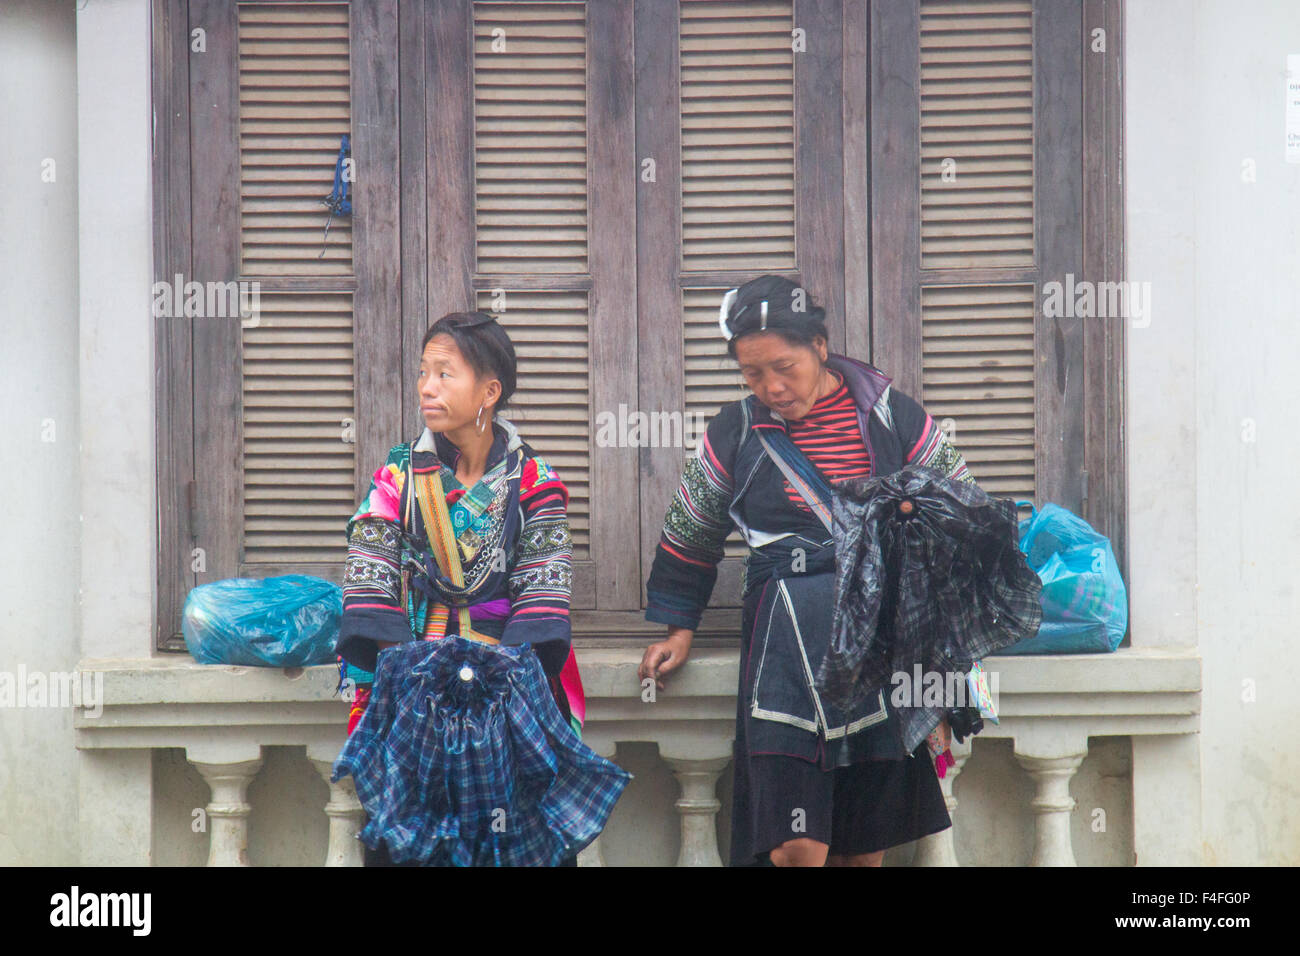 Sapa ou sa Pa est une ville frontière au Vietnam, shots ici dans la saison des pluies, les femmes de la tribu noire hmong abri de la pluie, Vietnam Banque D'Images